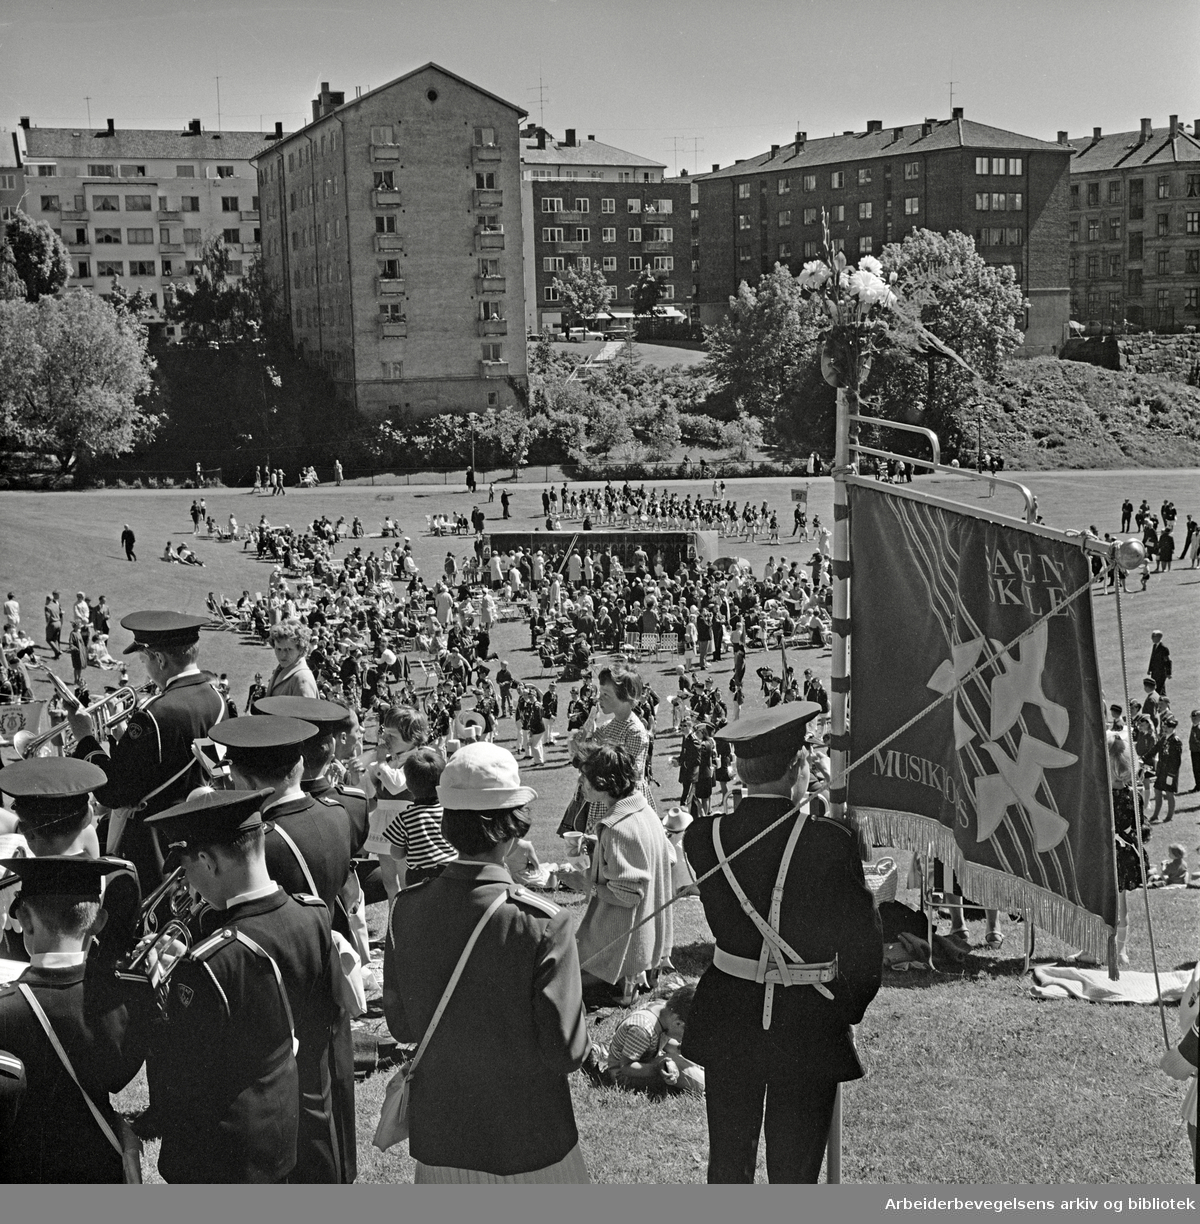 Sagene skoles musikkorps arrangerer musikkstevne i Ila-dalen. 11.06.1967.